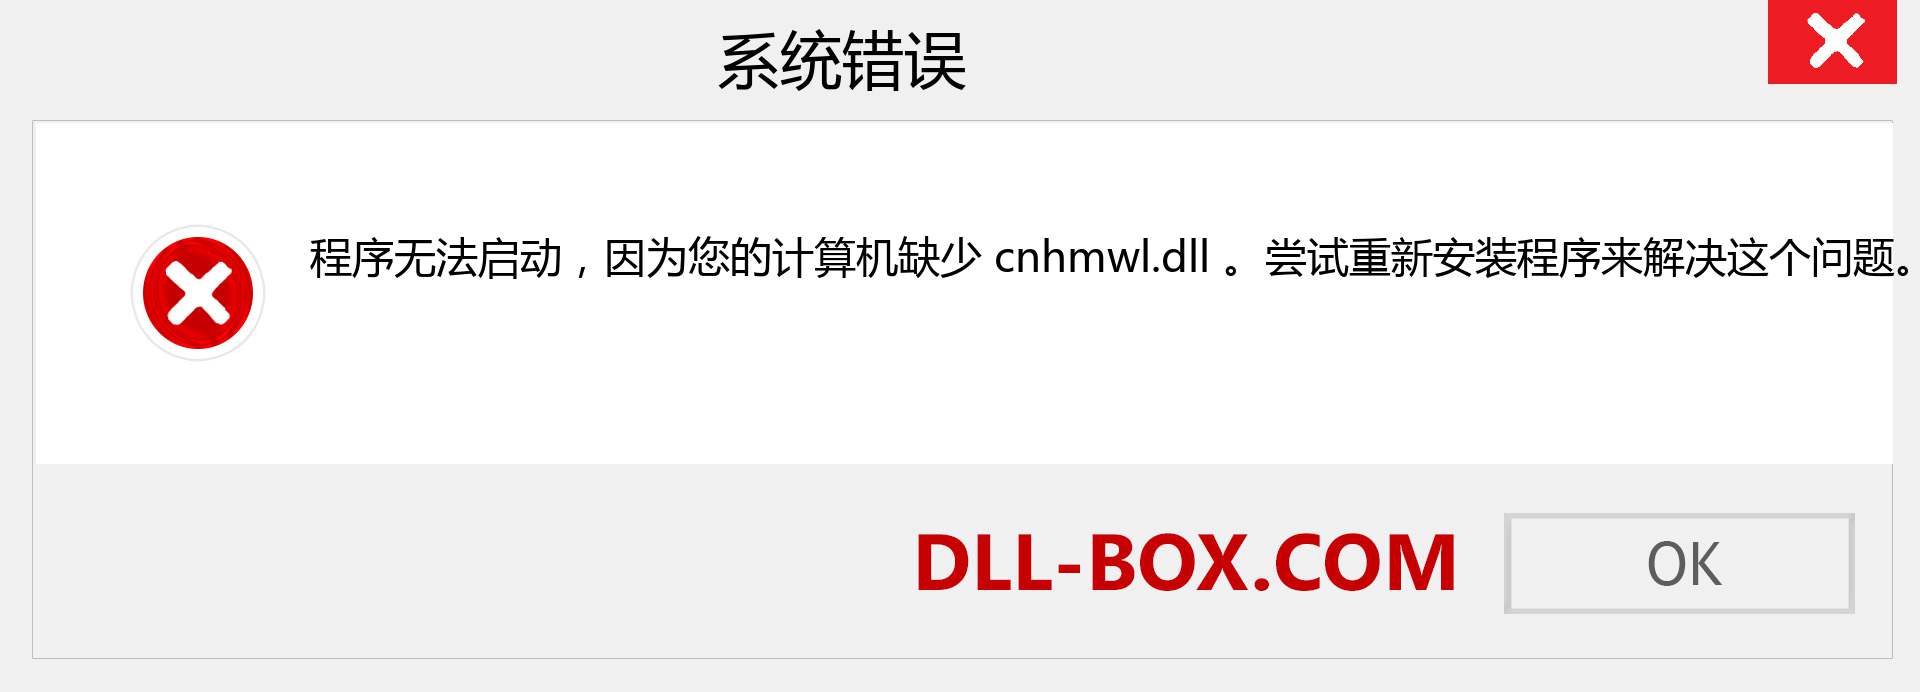 cnhmwl.dll 文件丢失？。 适用于 Windows 7、8、10 的下载 - 修复 Windows、照片、图像上的 cnhmwl dll 丢失错误